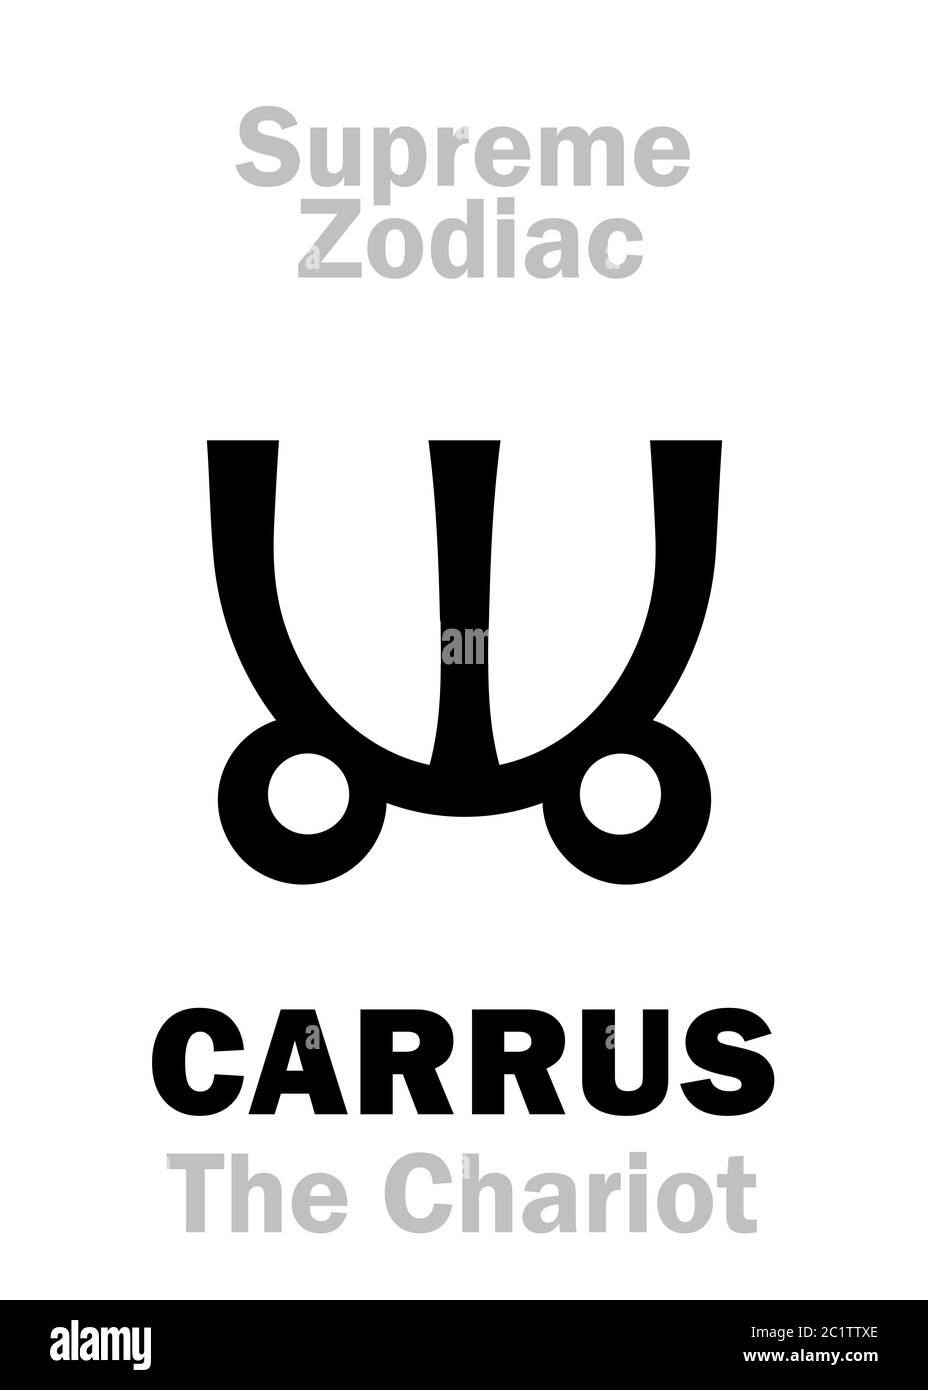 Astrología: Zodiaco Supremo: CARRUS (el carruaje / el Chariot) o Ursa mayor Foto de stock